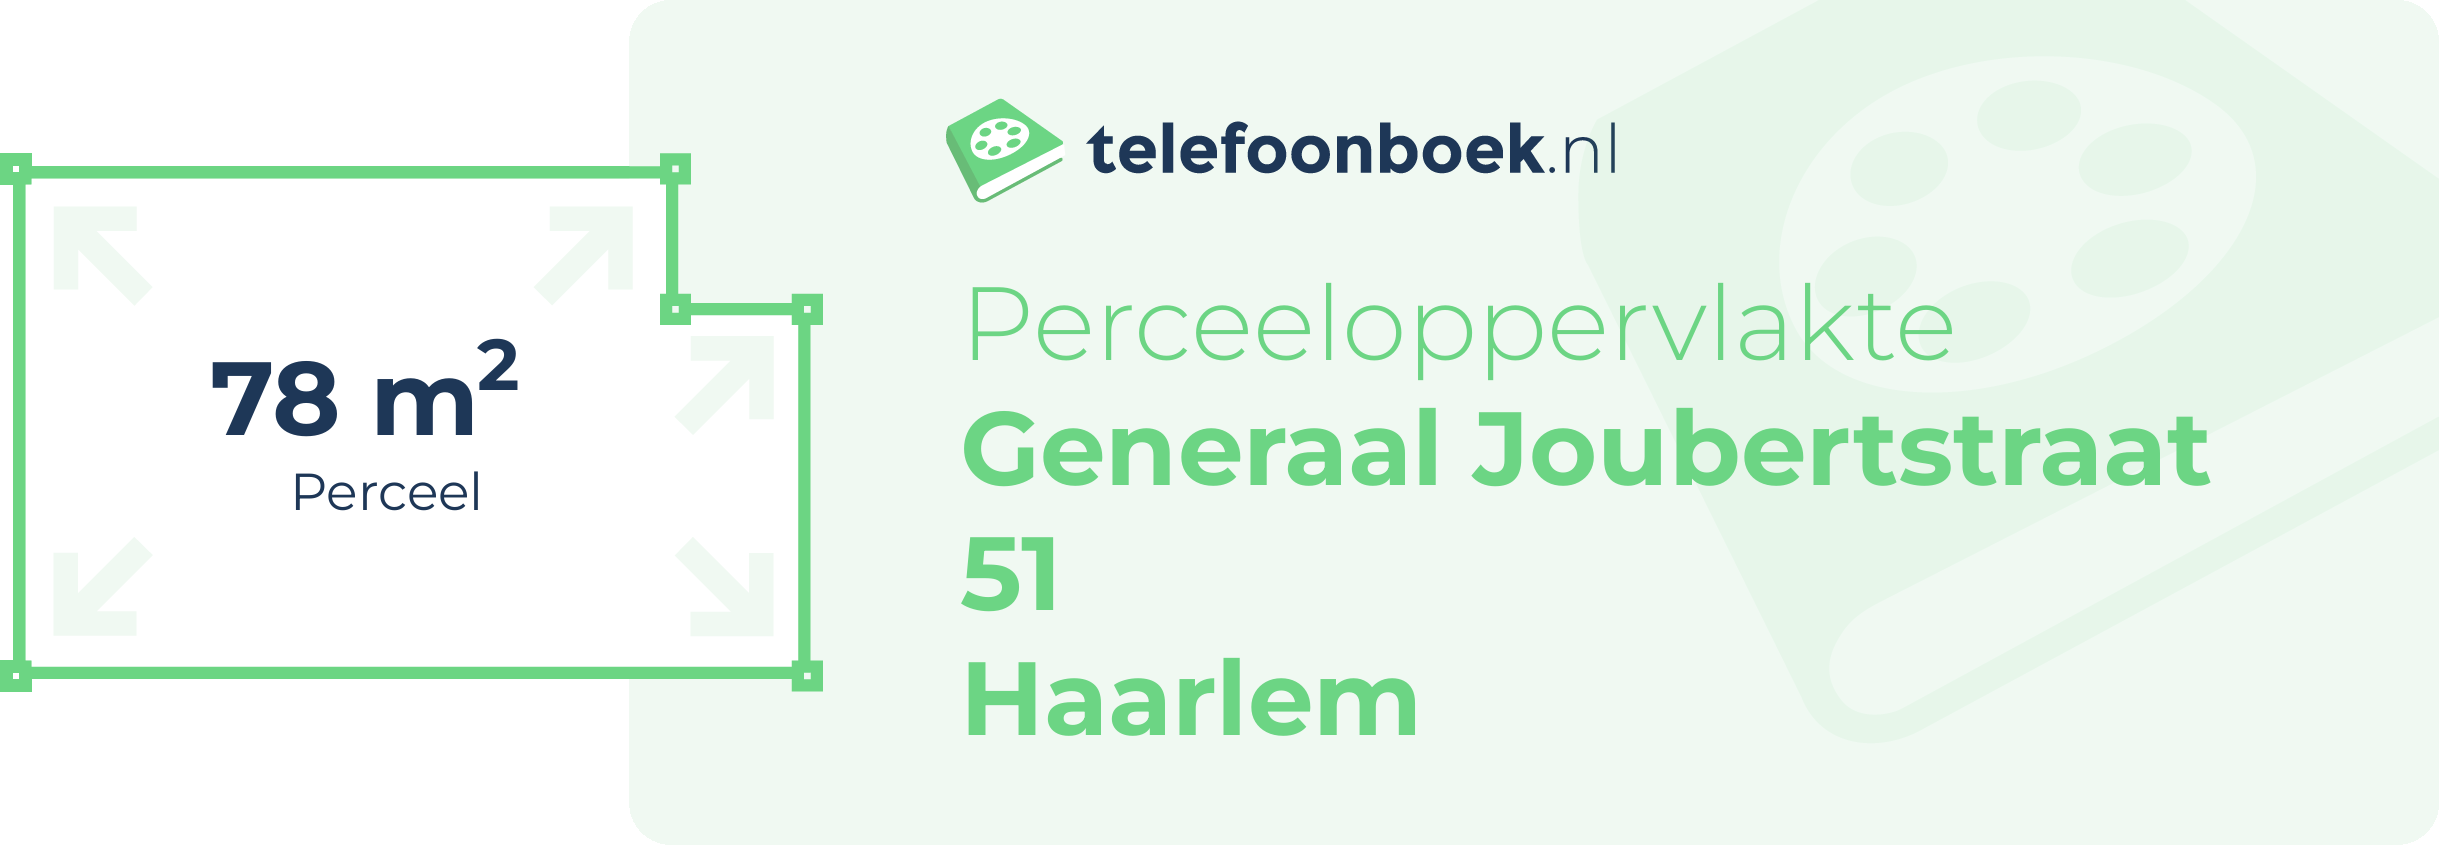 Perceeloppervlakte Generaal Joubertstraat 51 Haarlem